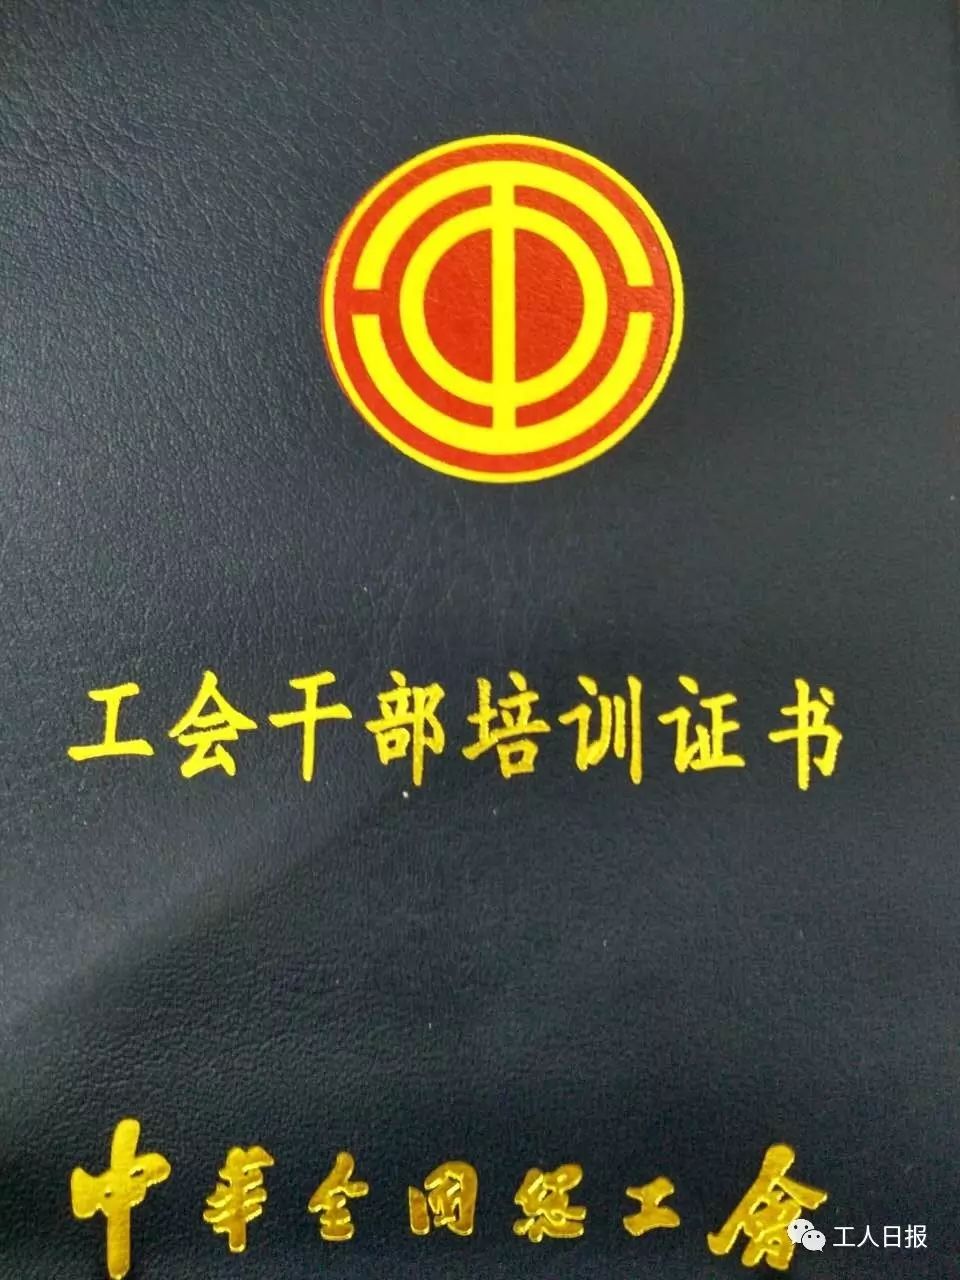 中国工会会徽,可在 工会办公地点,活动场所,会议会场悬挂,可作为纪念